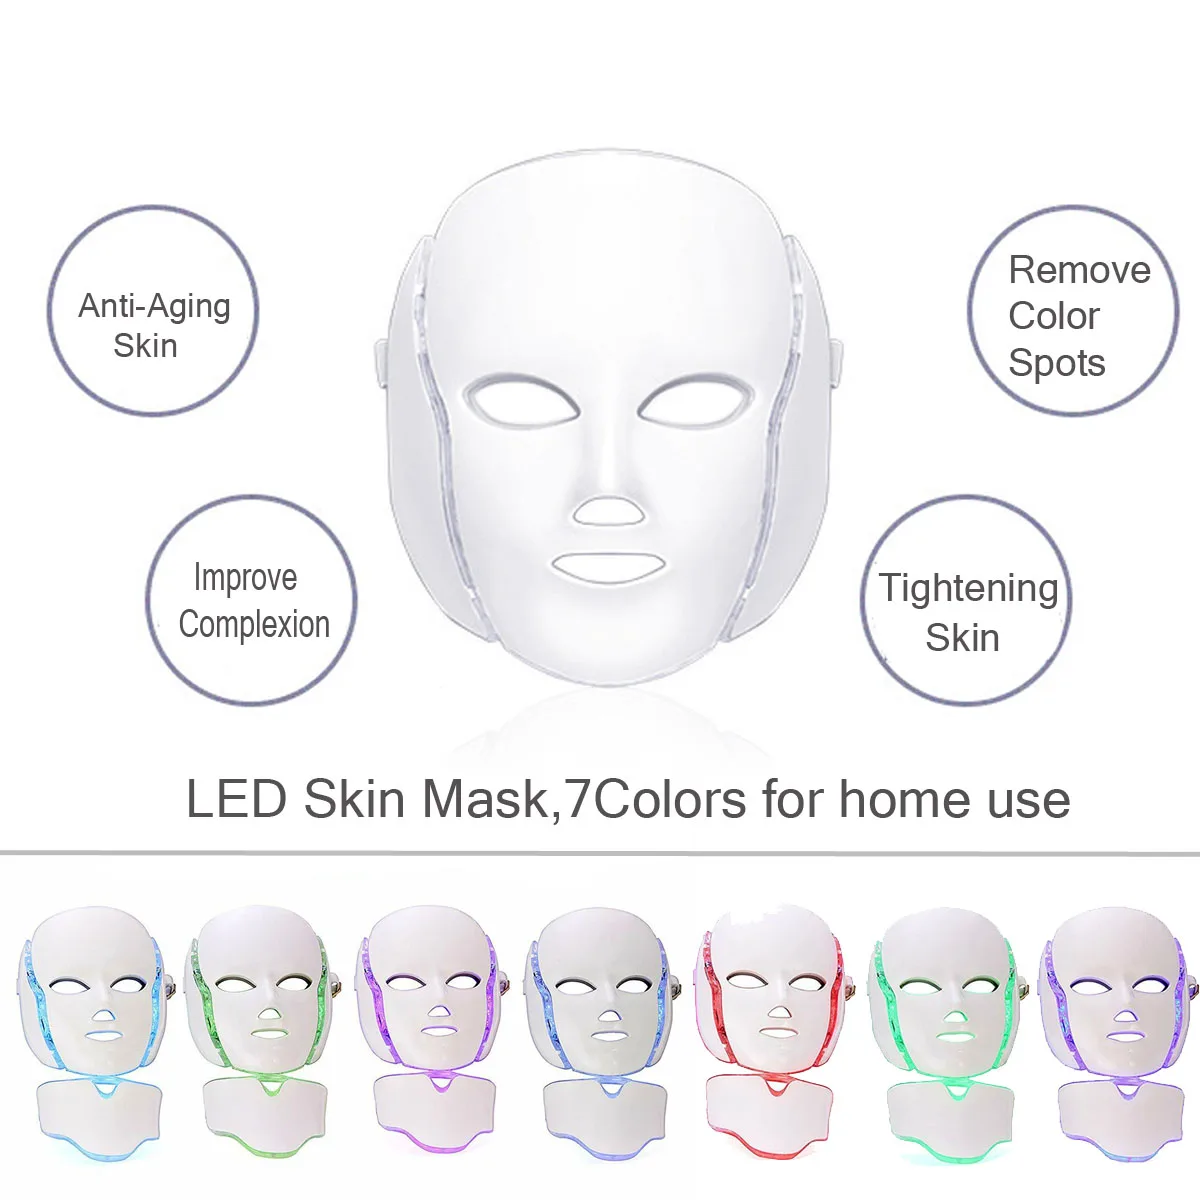 7 цветов светодиодный светильник фотонотерапия Маска Лечение омоложения кожи Отбеливание лица красота ежедневный уход за кожей маска для домашнего использования Горячая